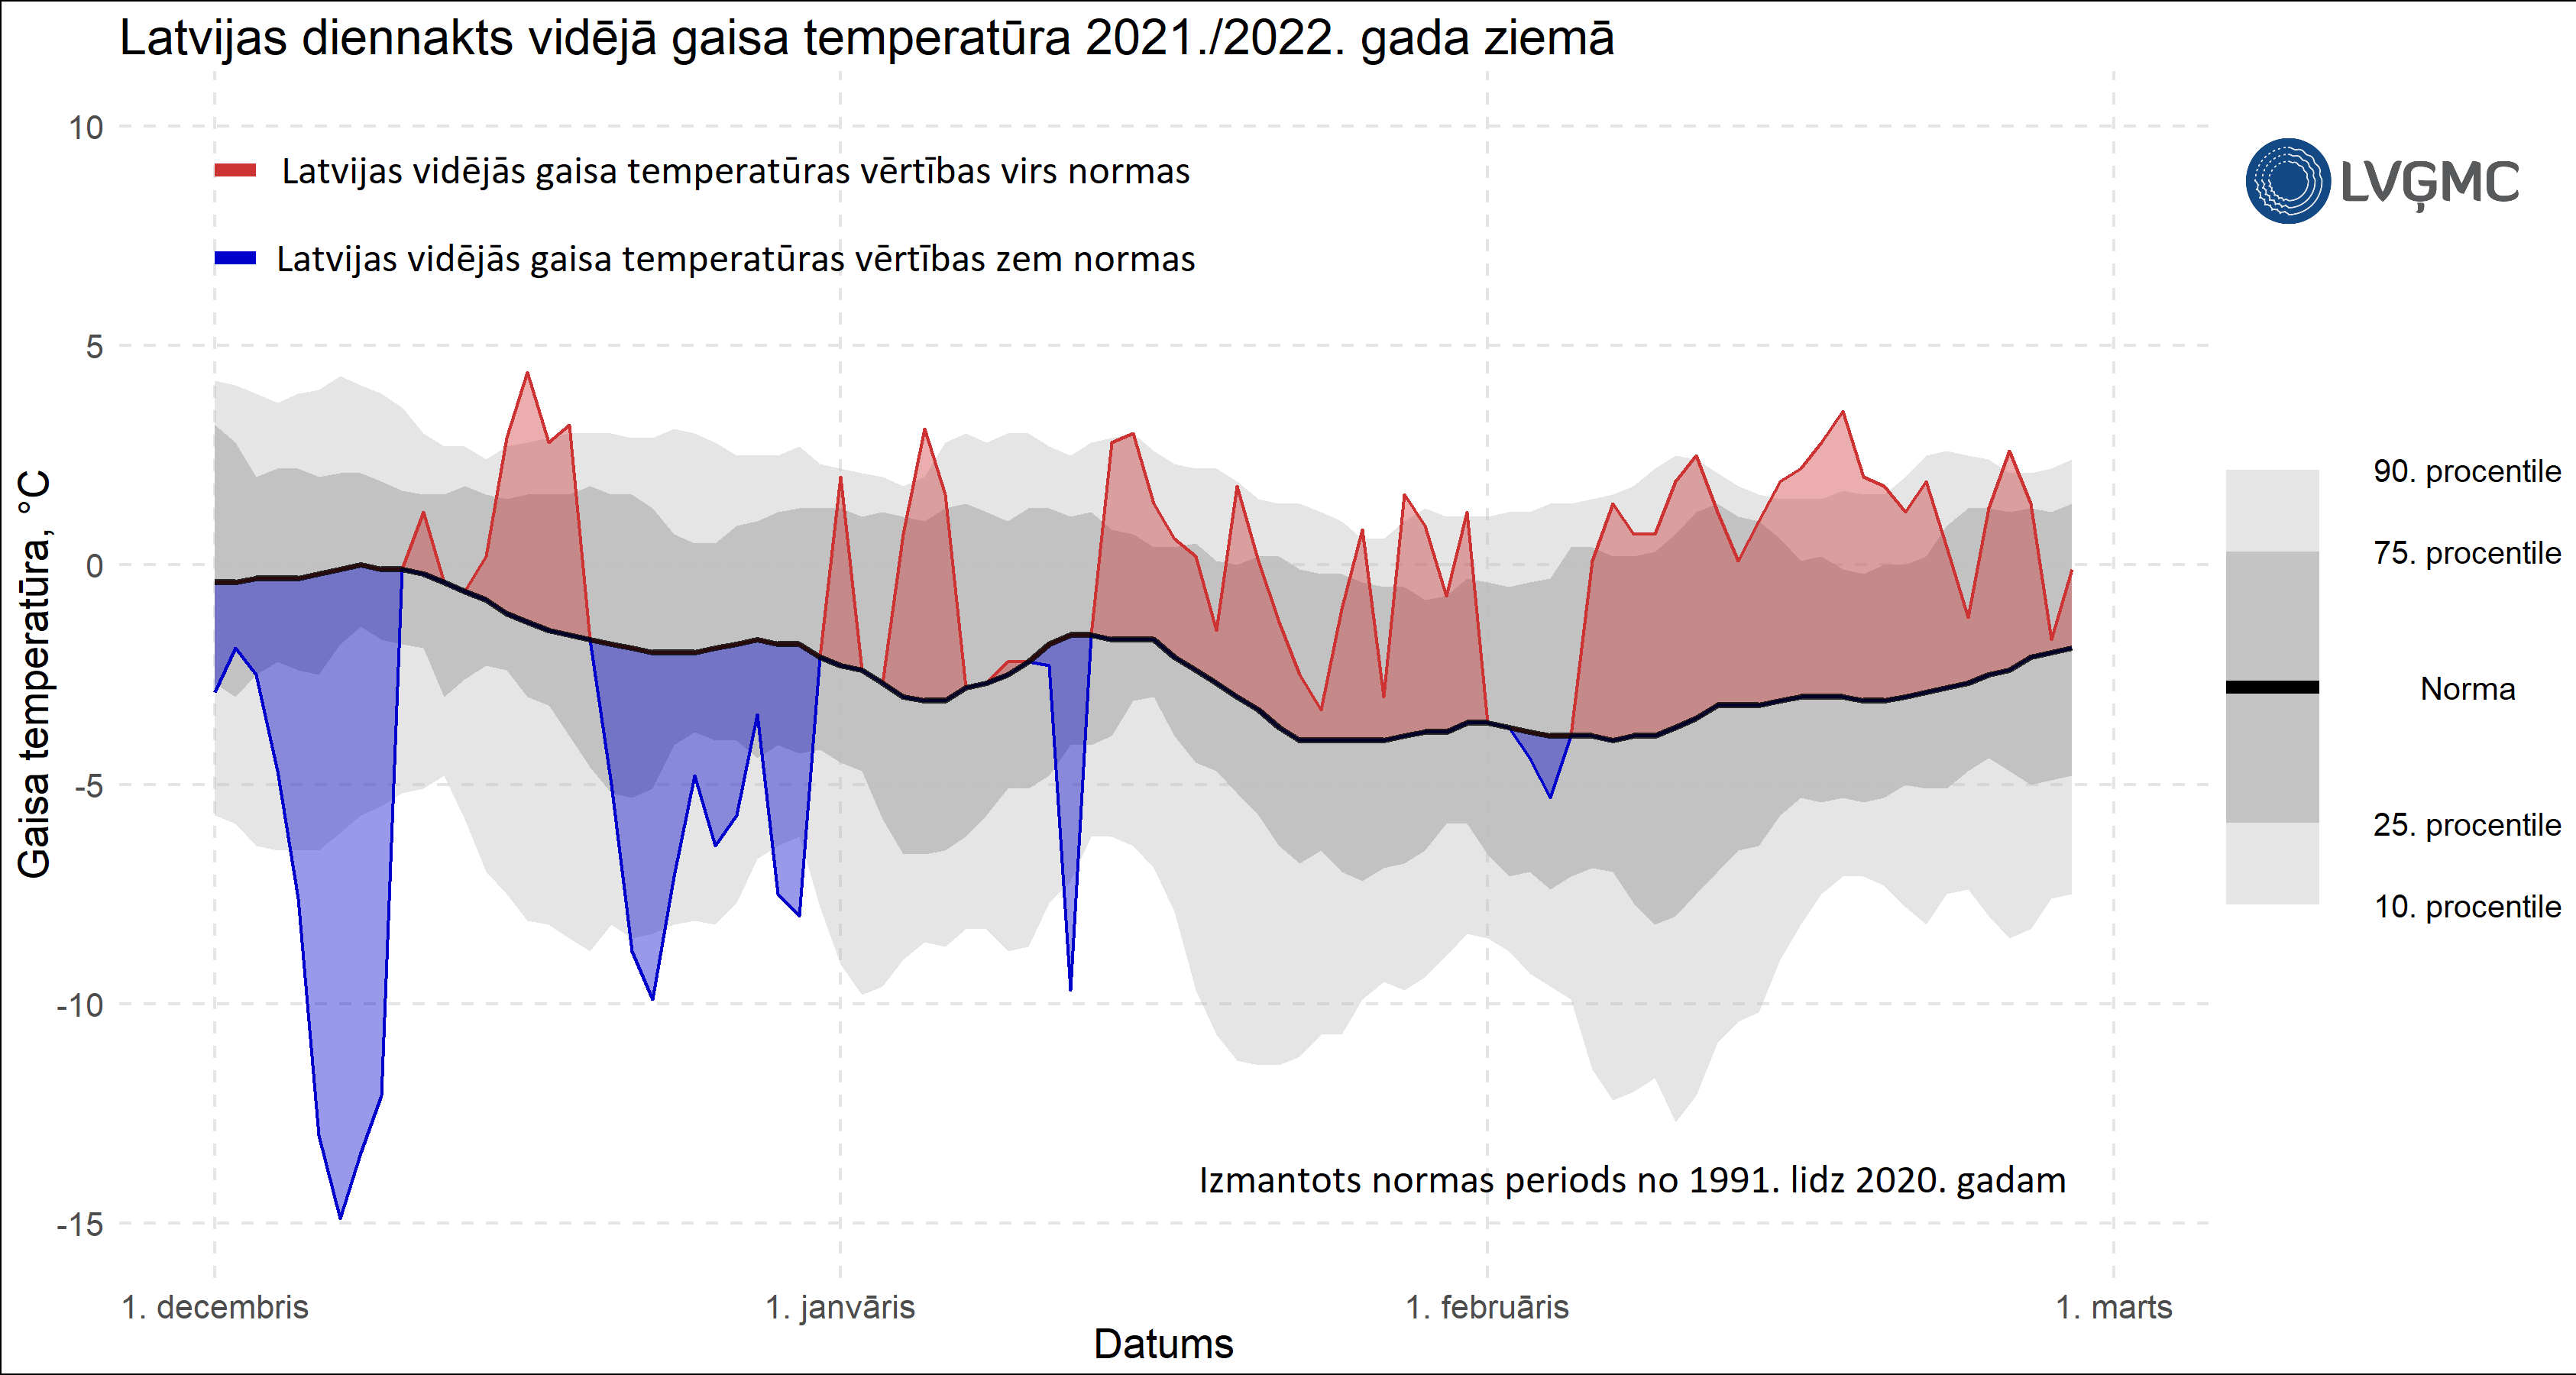 Latvijas diennakts vidējā gaisa temperatūra 2021.-2022. gada ziemā, °C